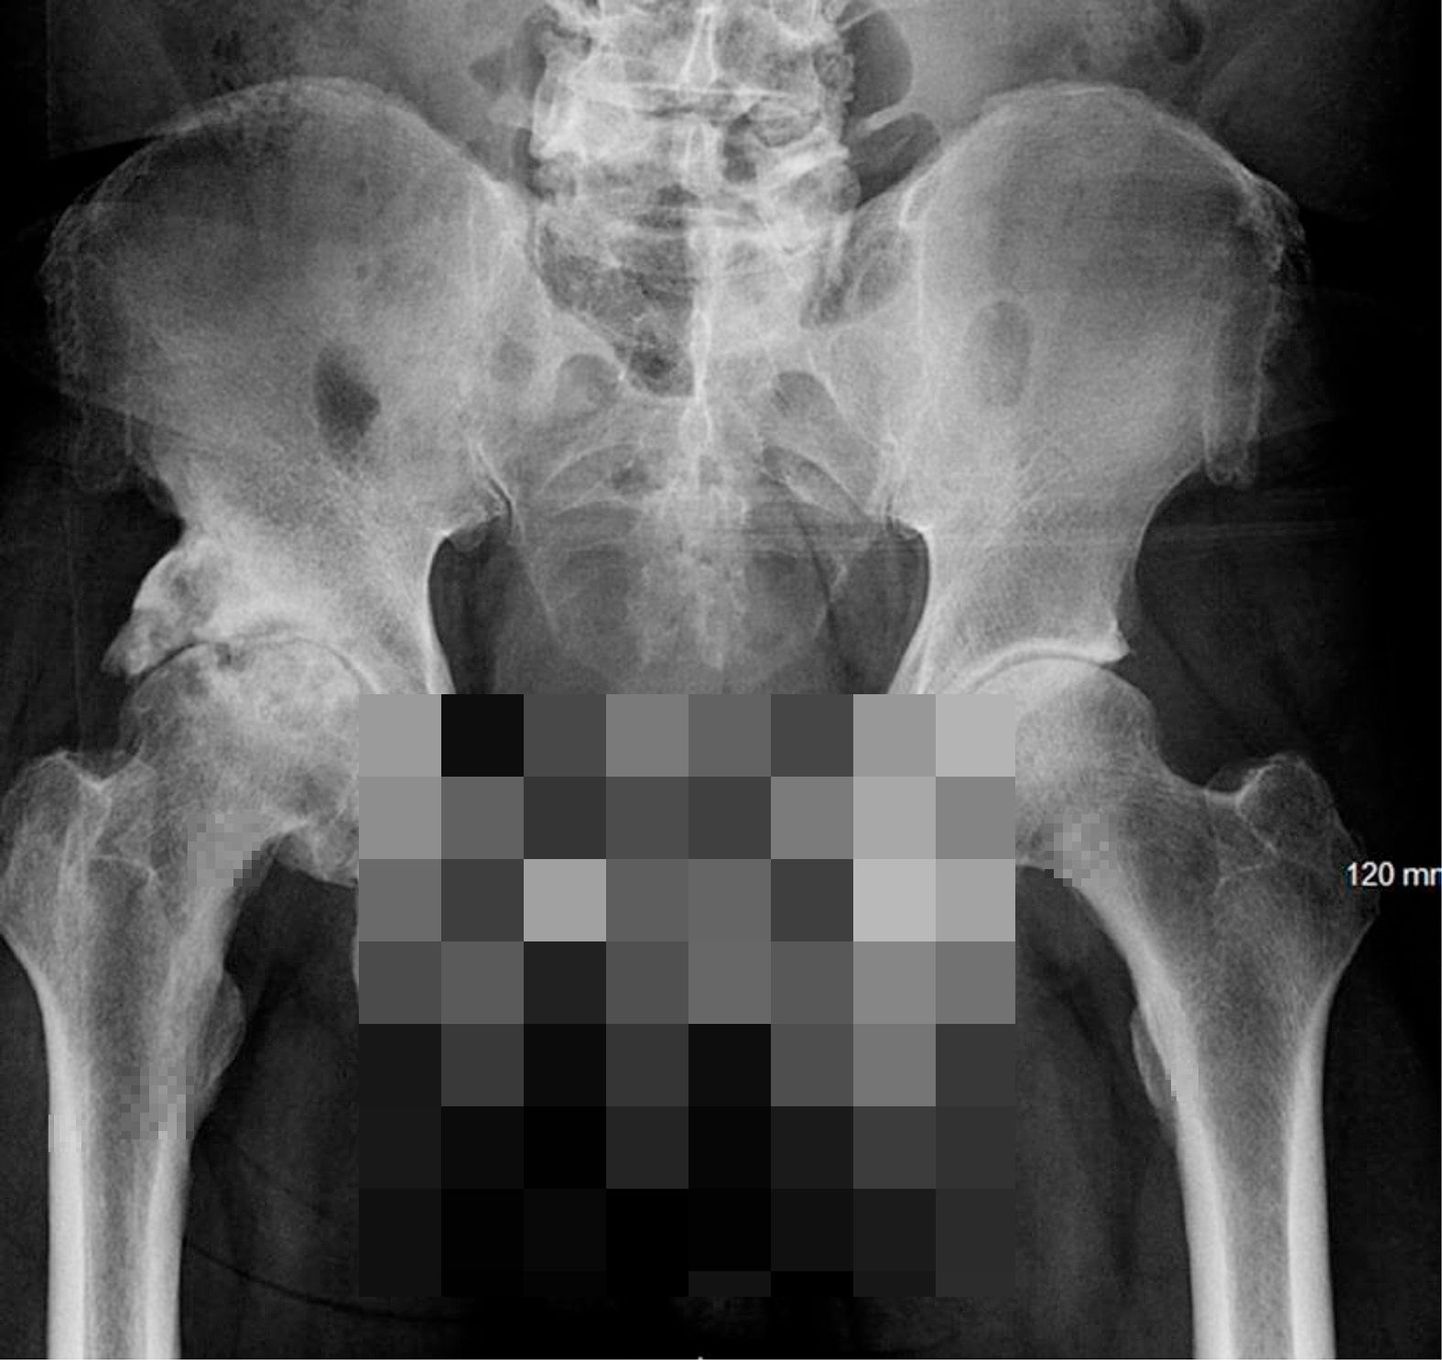 Sellest röntgenpildist selgus, et mehe peenis oli mõnda aega luustunud.